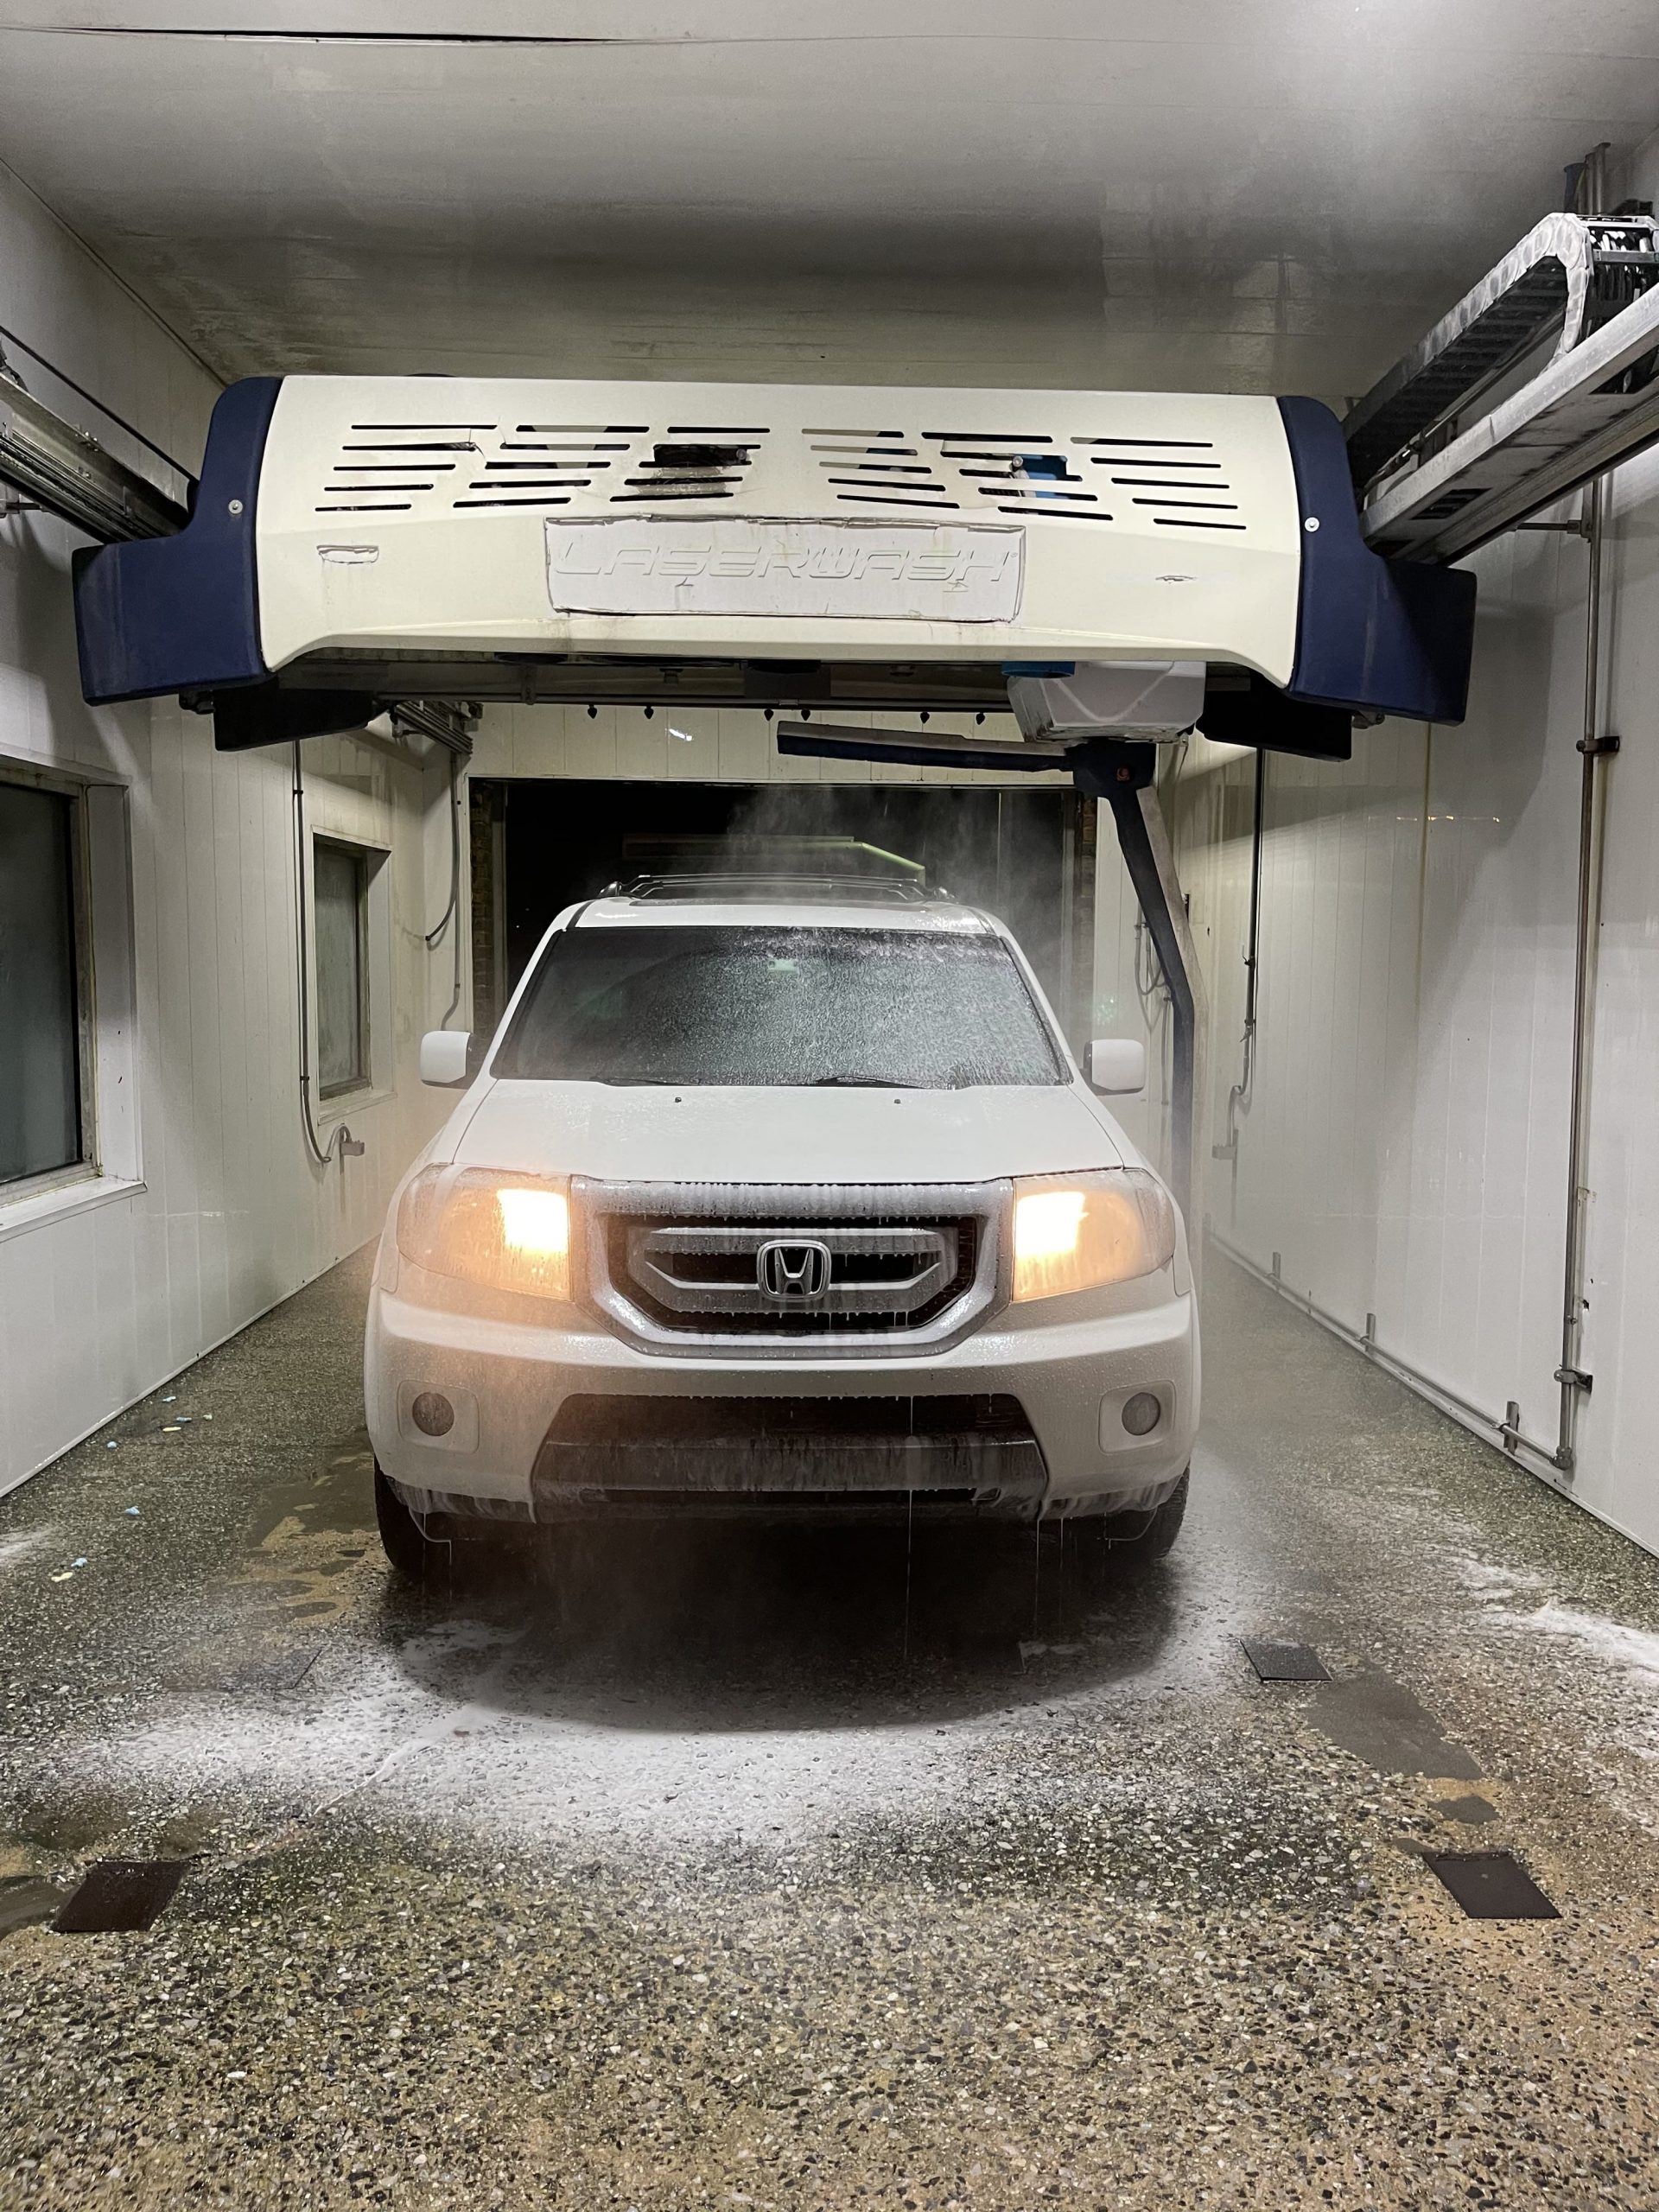 car in a car wash